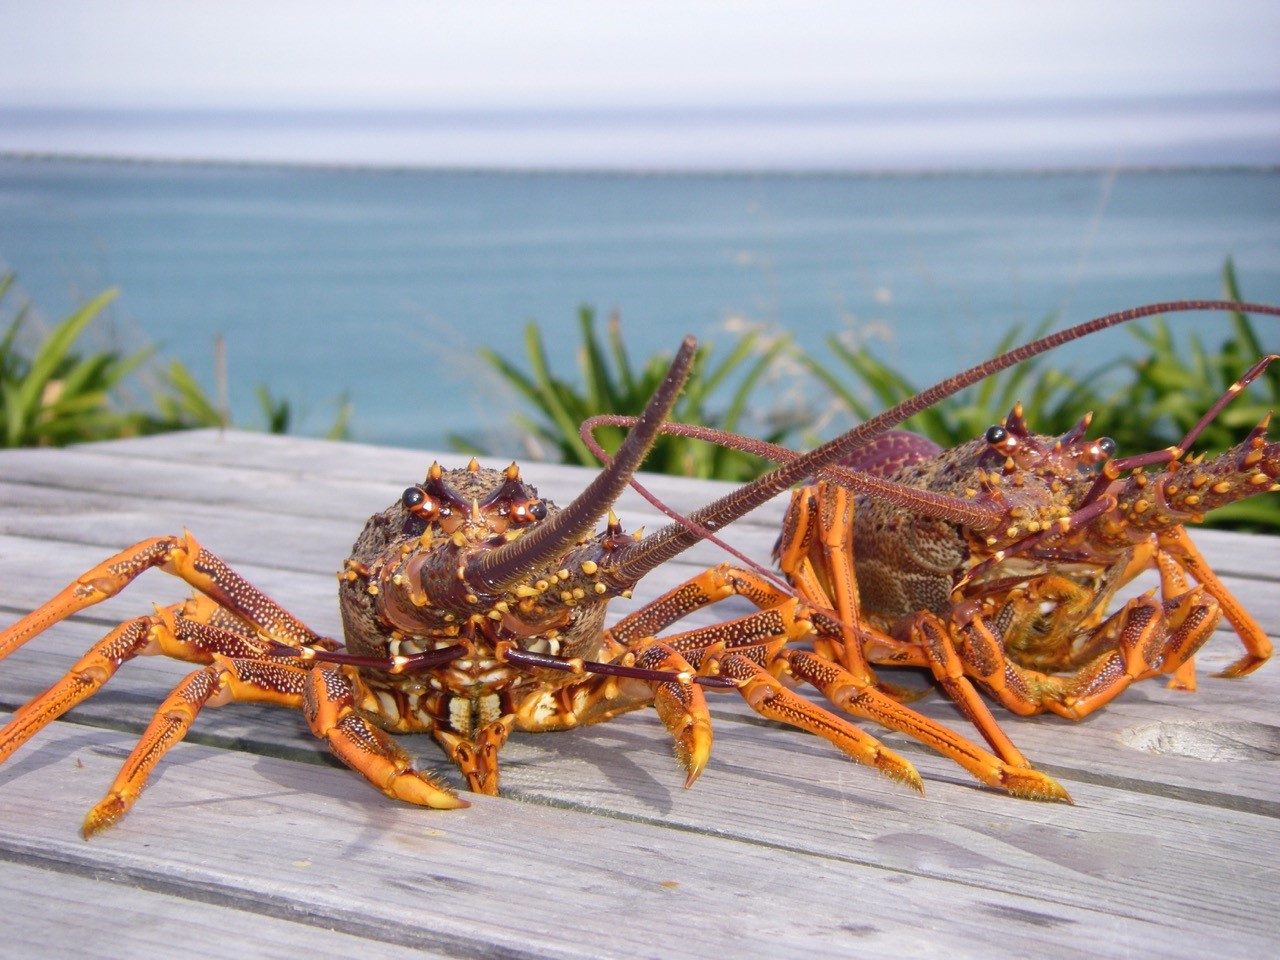 crayfish at Kaikoura